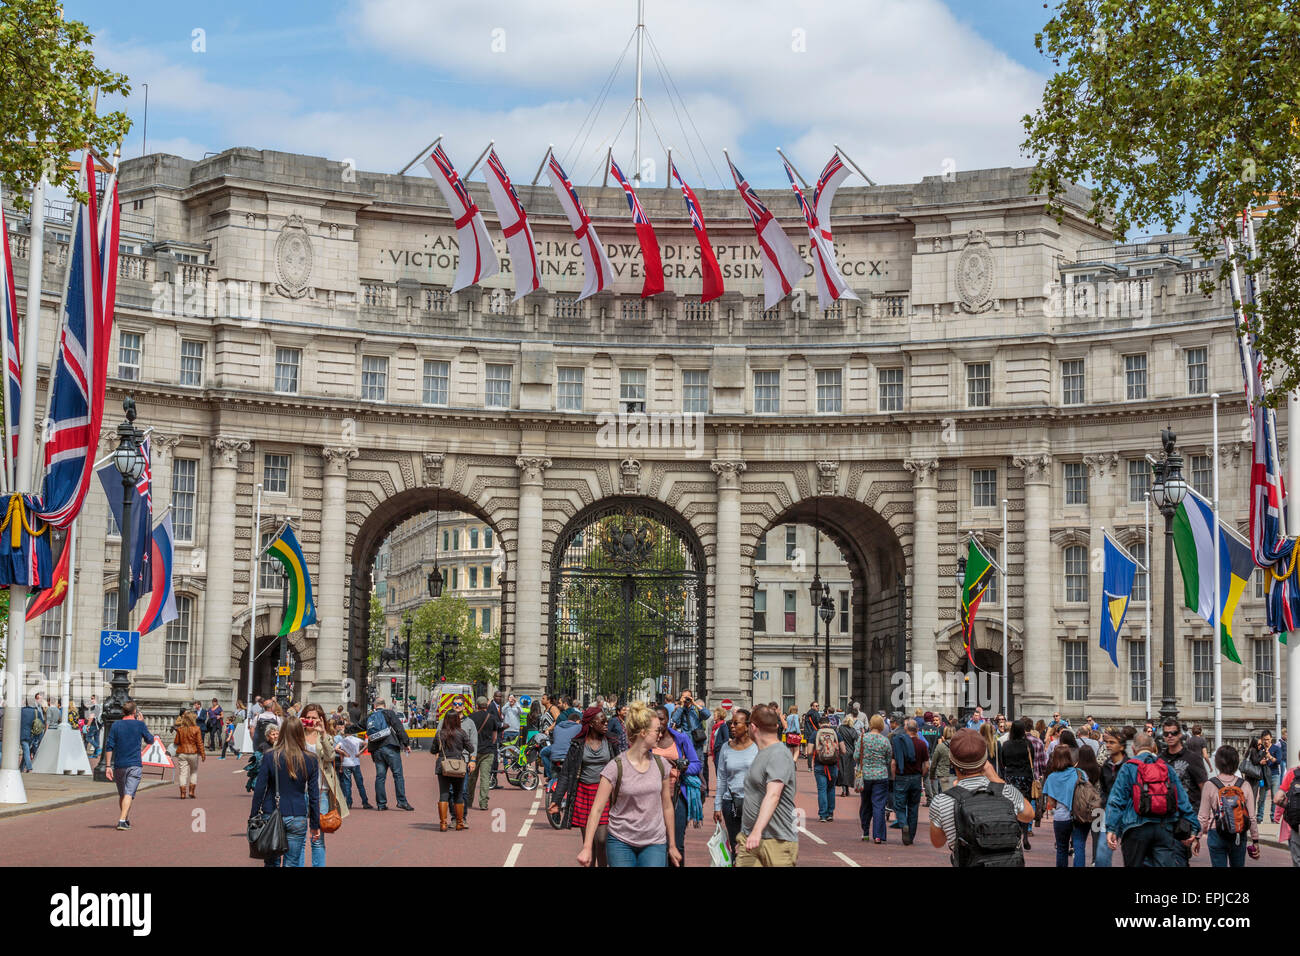 Image paysage de l'Admiralty Arch, vu depuis le centre commercial, la passerelle à Buckingham Palace Londres, Royaume-Uni, Angleterre Banque D'Images